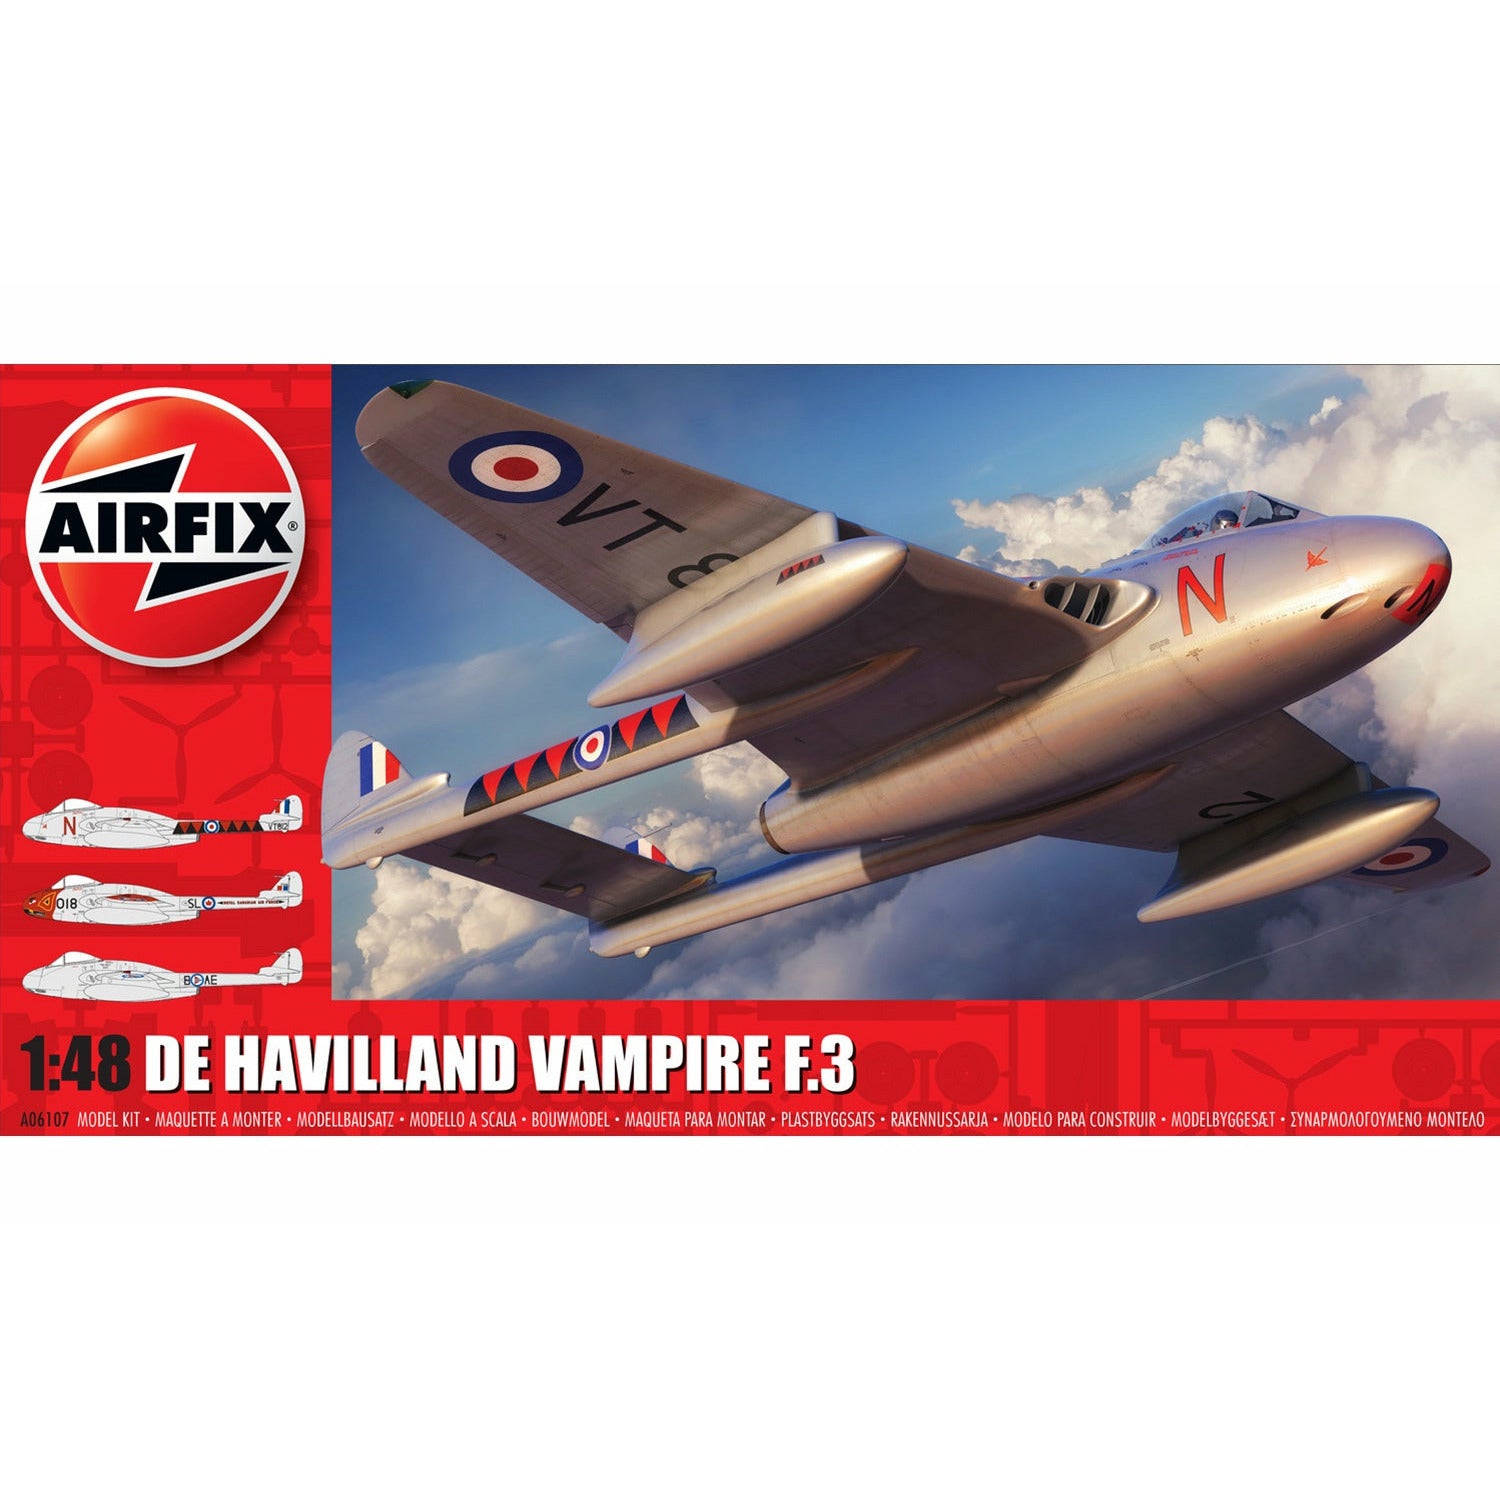 De Havilland Vampire T.3 1/48 #06107 by Airfix